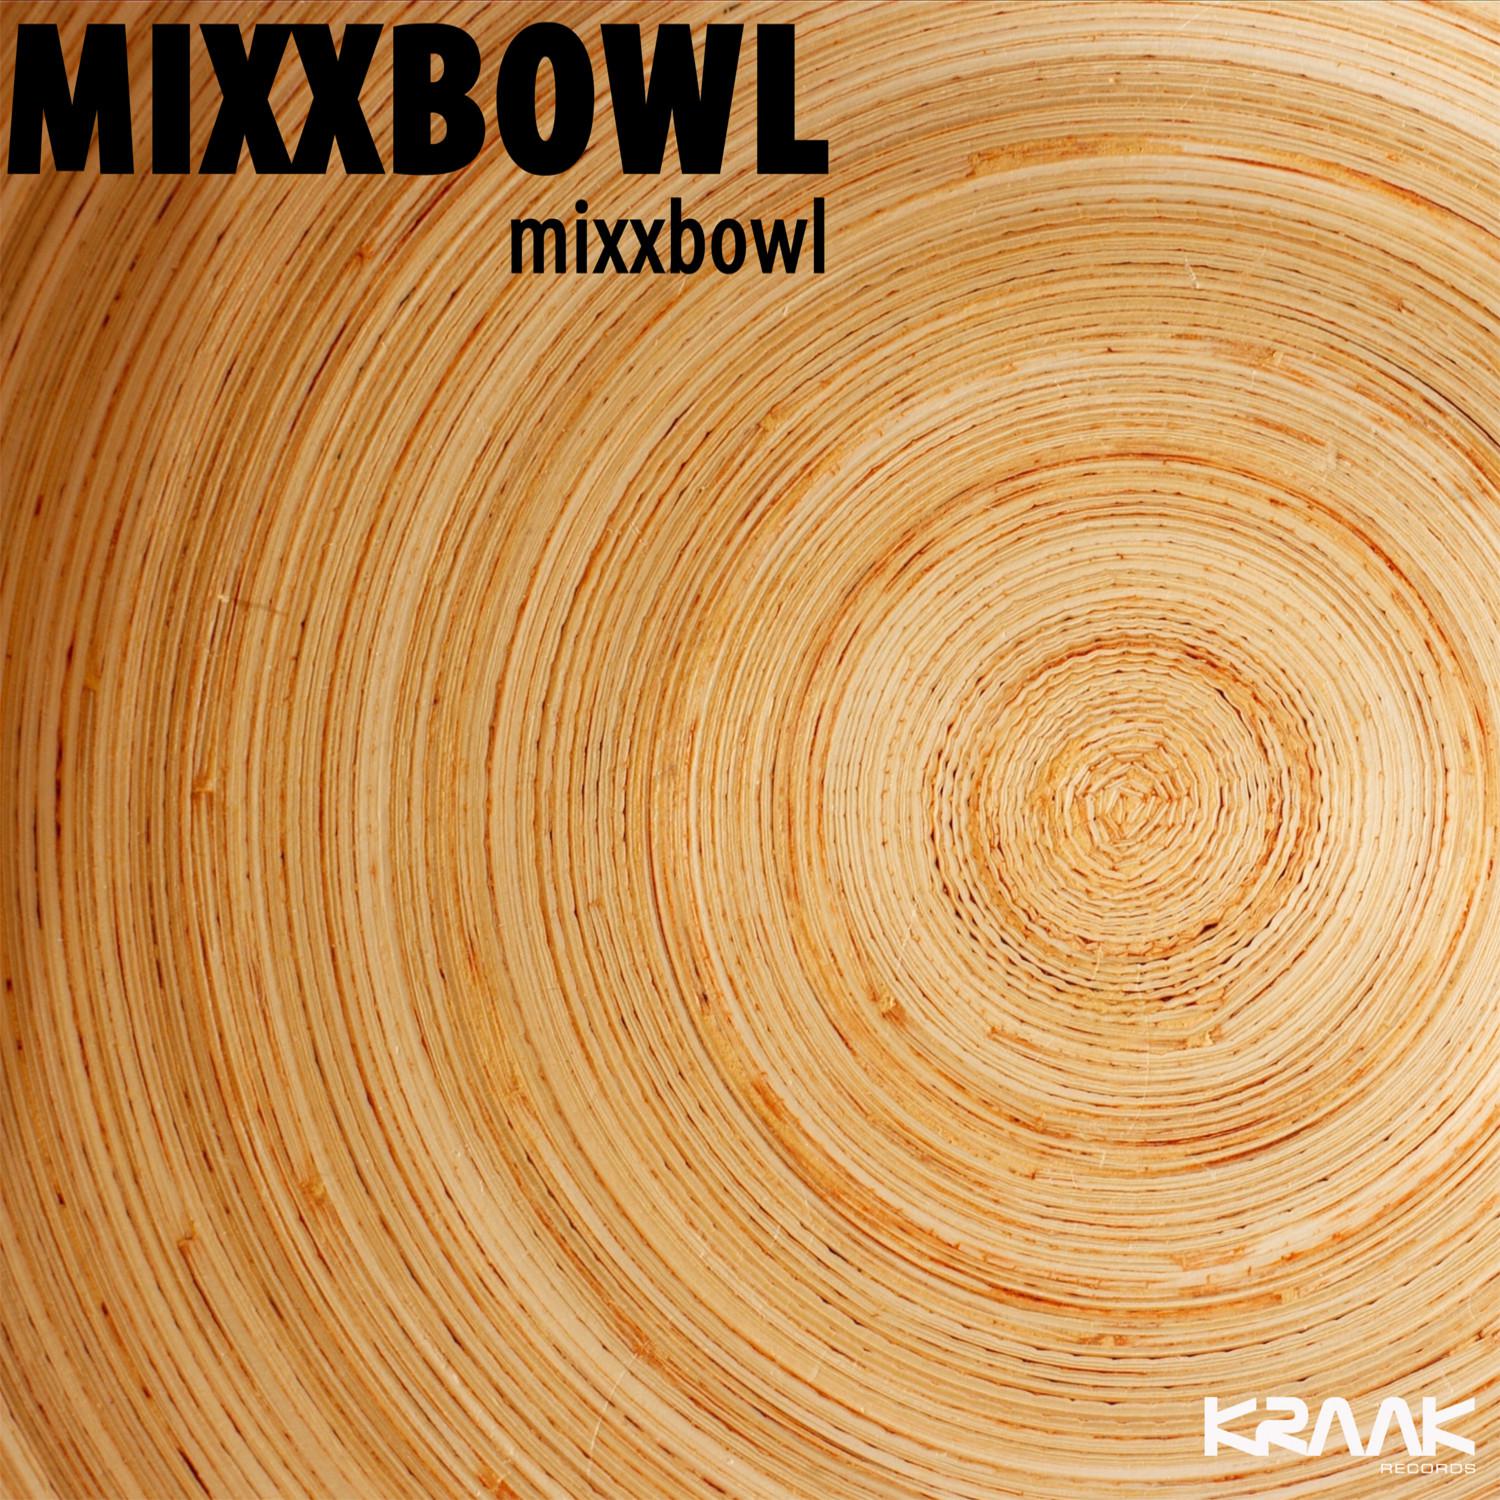 Mixxbowl